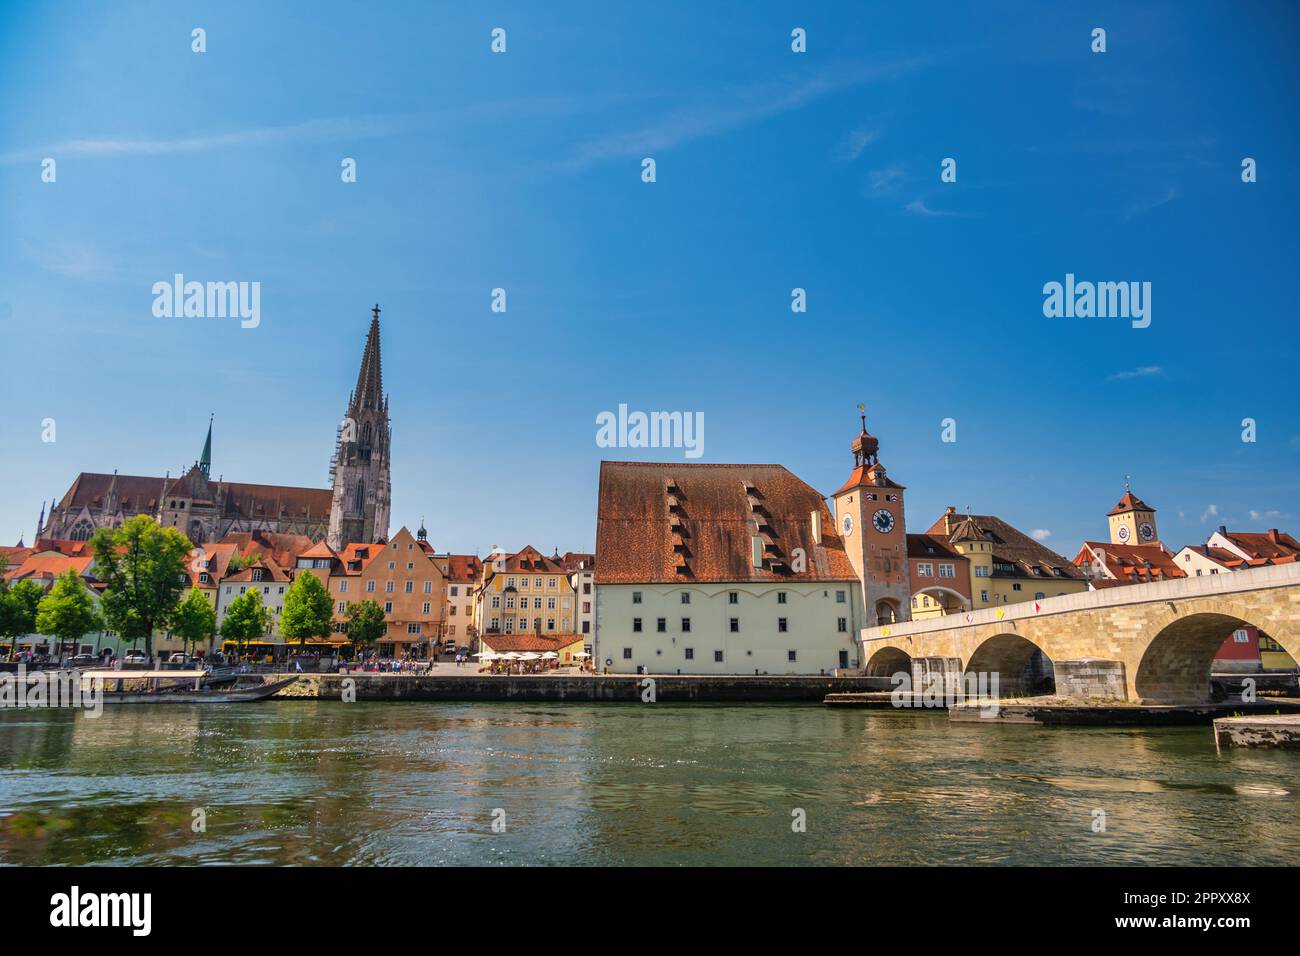 Ratisbonne Allemagne, vue sur la vieille ville d'Altstadt et le Danube Banque D'Images